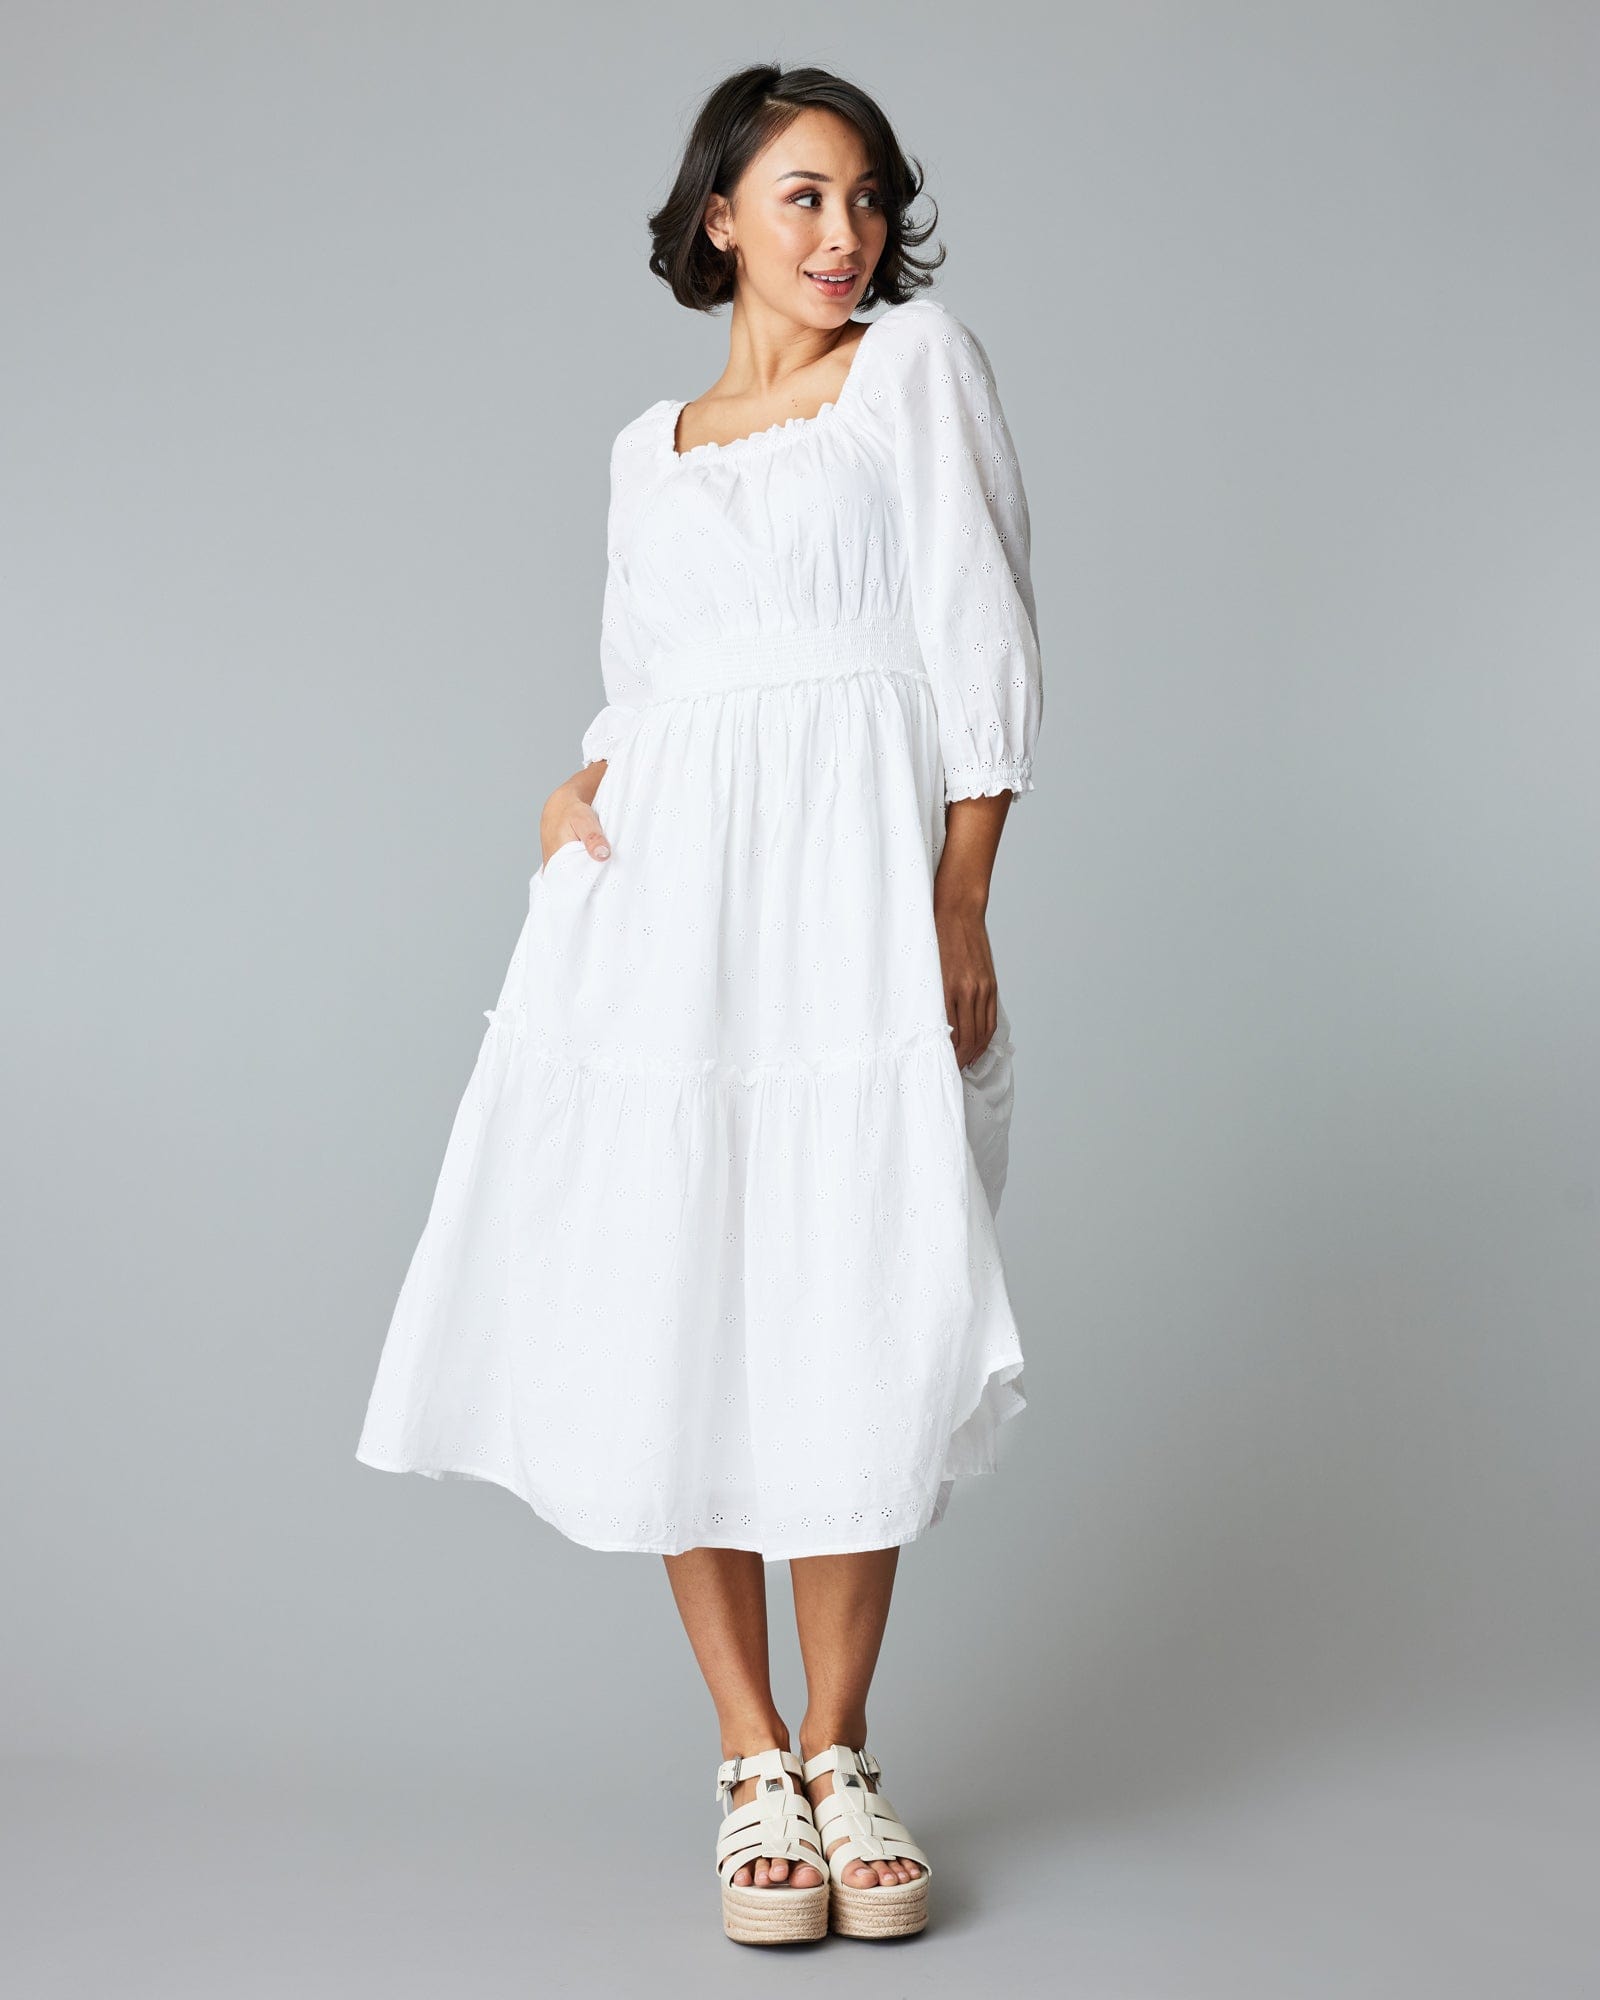 Woman in a white, eyelet midi length dress